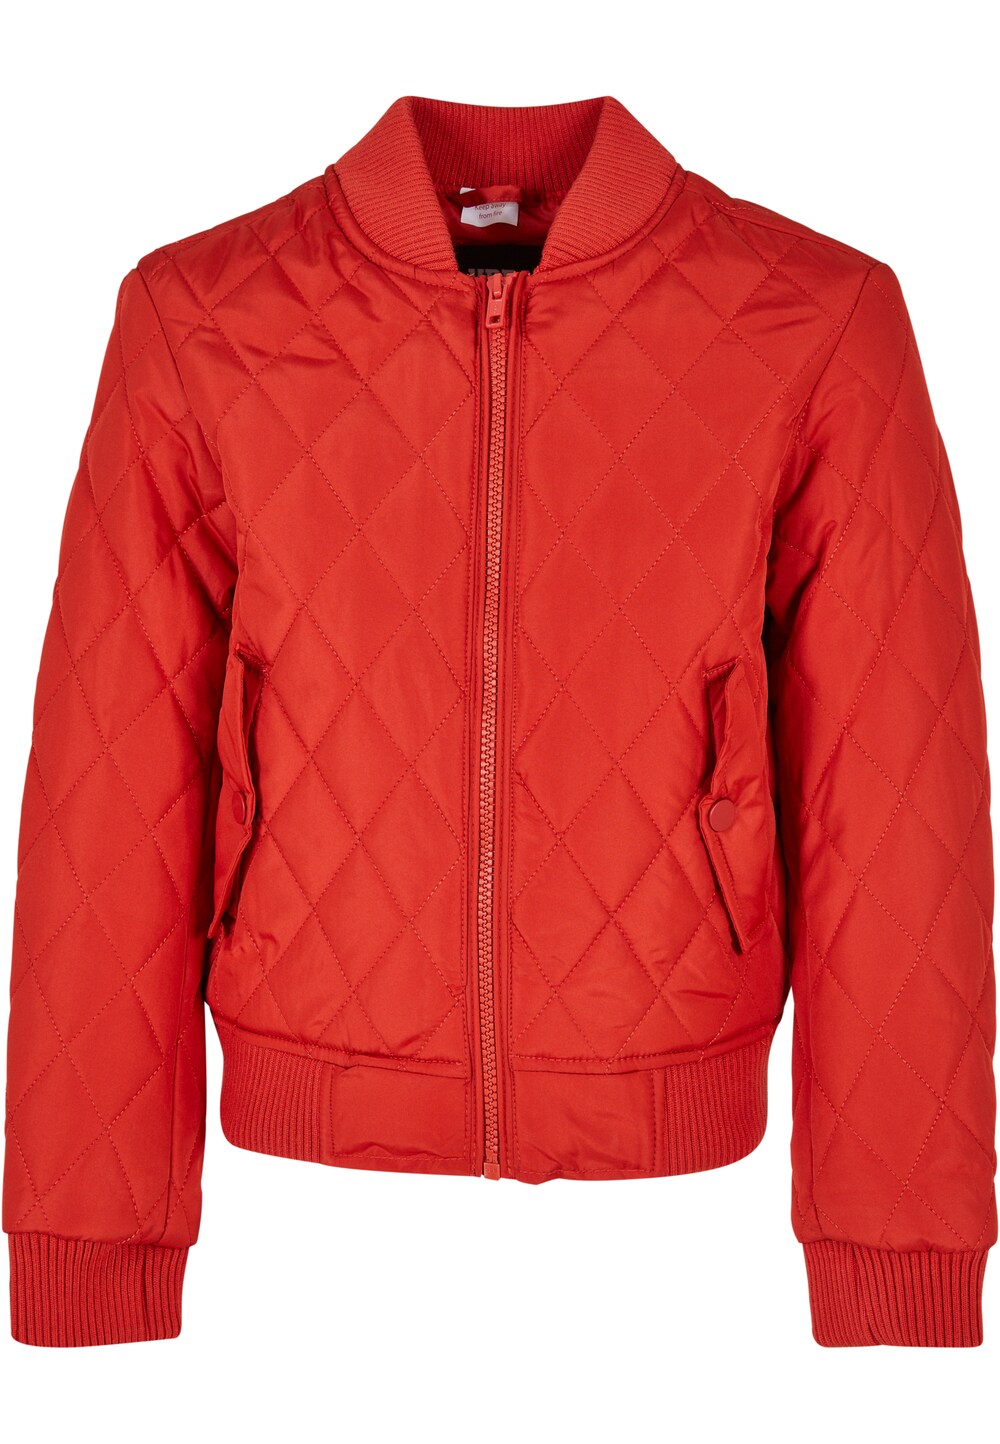 Межсезонная куртка Urban Classics Kids, ярко-красный